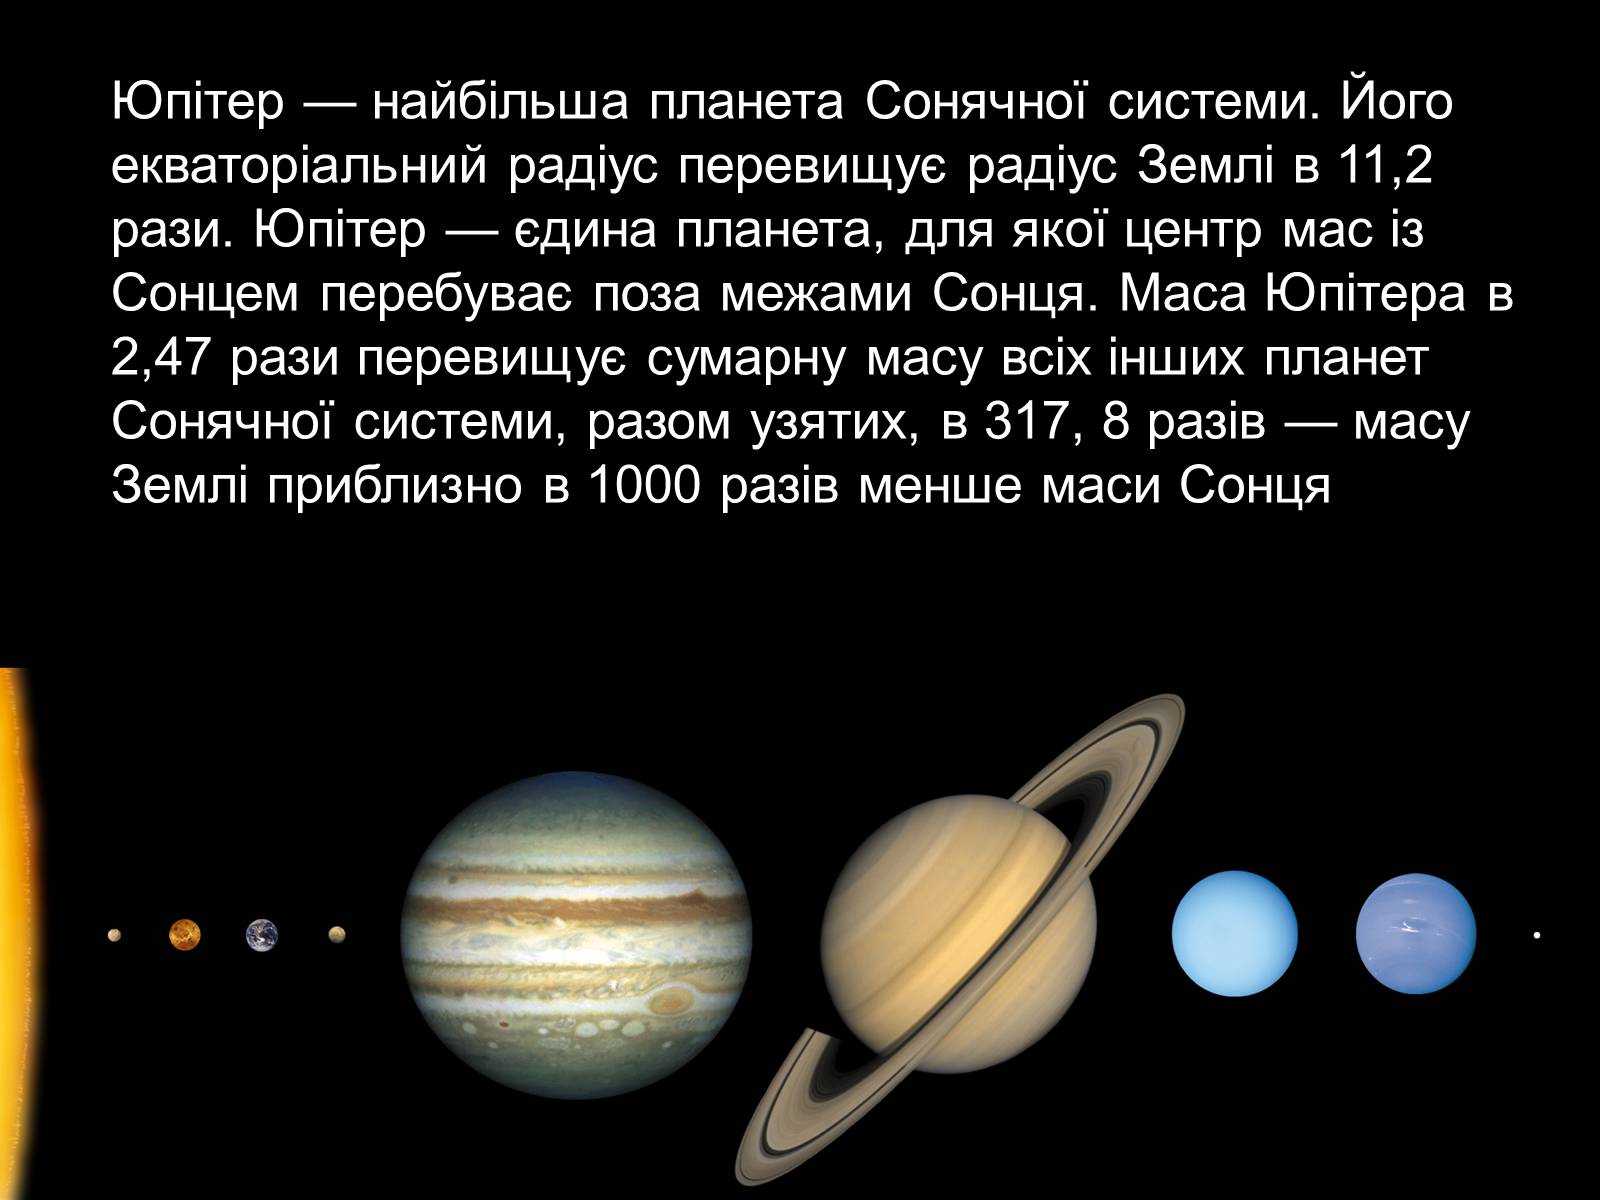 Положение Юпитера в солнечной системе